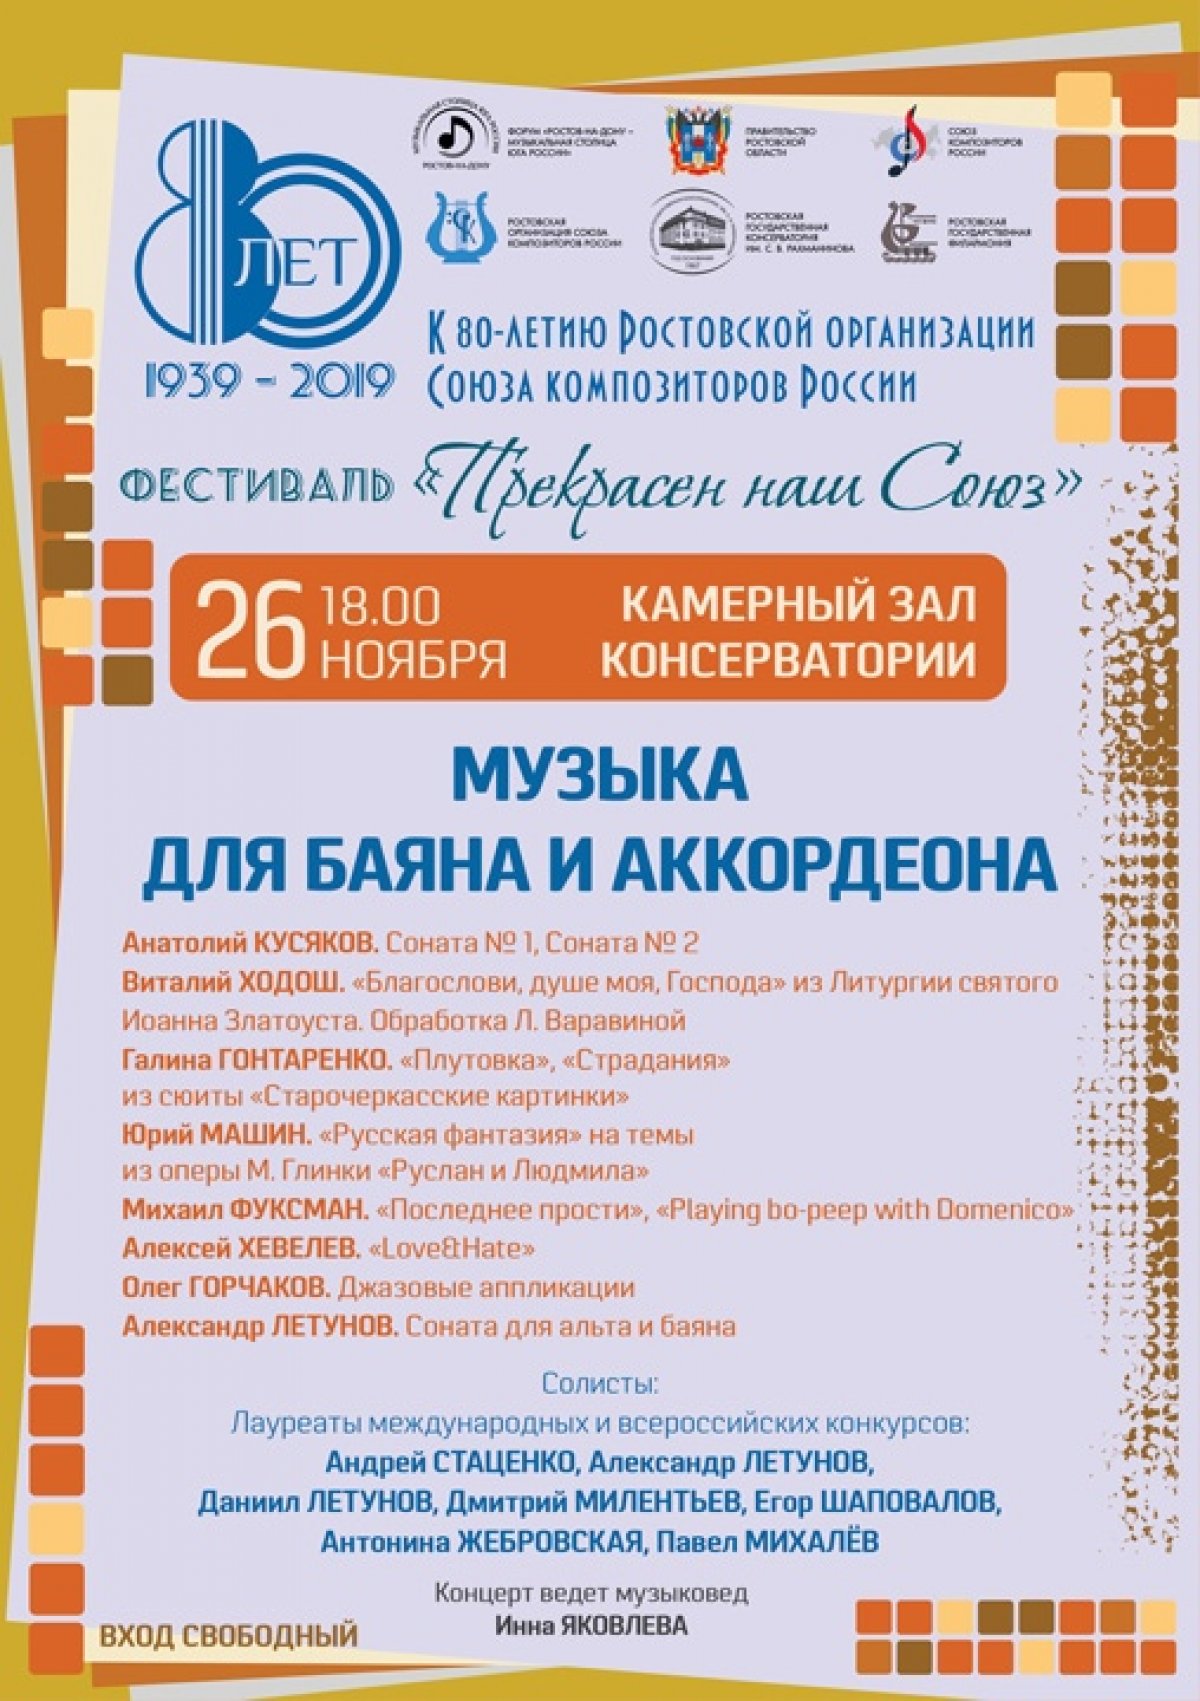 Друзья! Впереди большой юбилейный фестиваль Ростовской организации союза композиторов России!